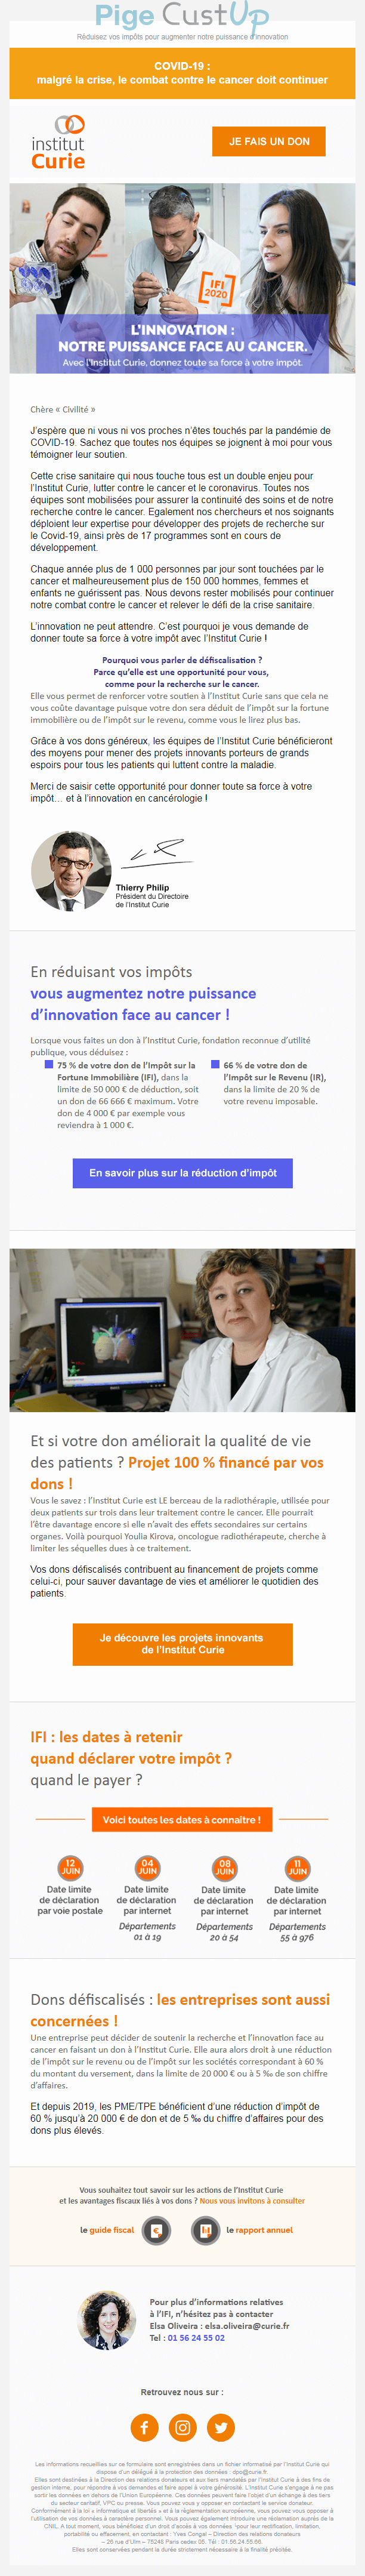 Exemple de Type de media  e-mailing - Institut Curie - Marketing Acquisition - Collecte de dons - Marketing marque - Institutionnel